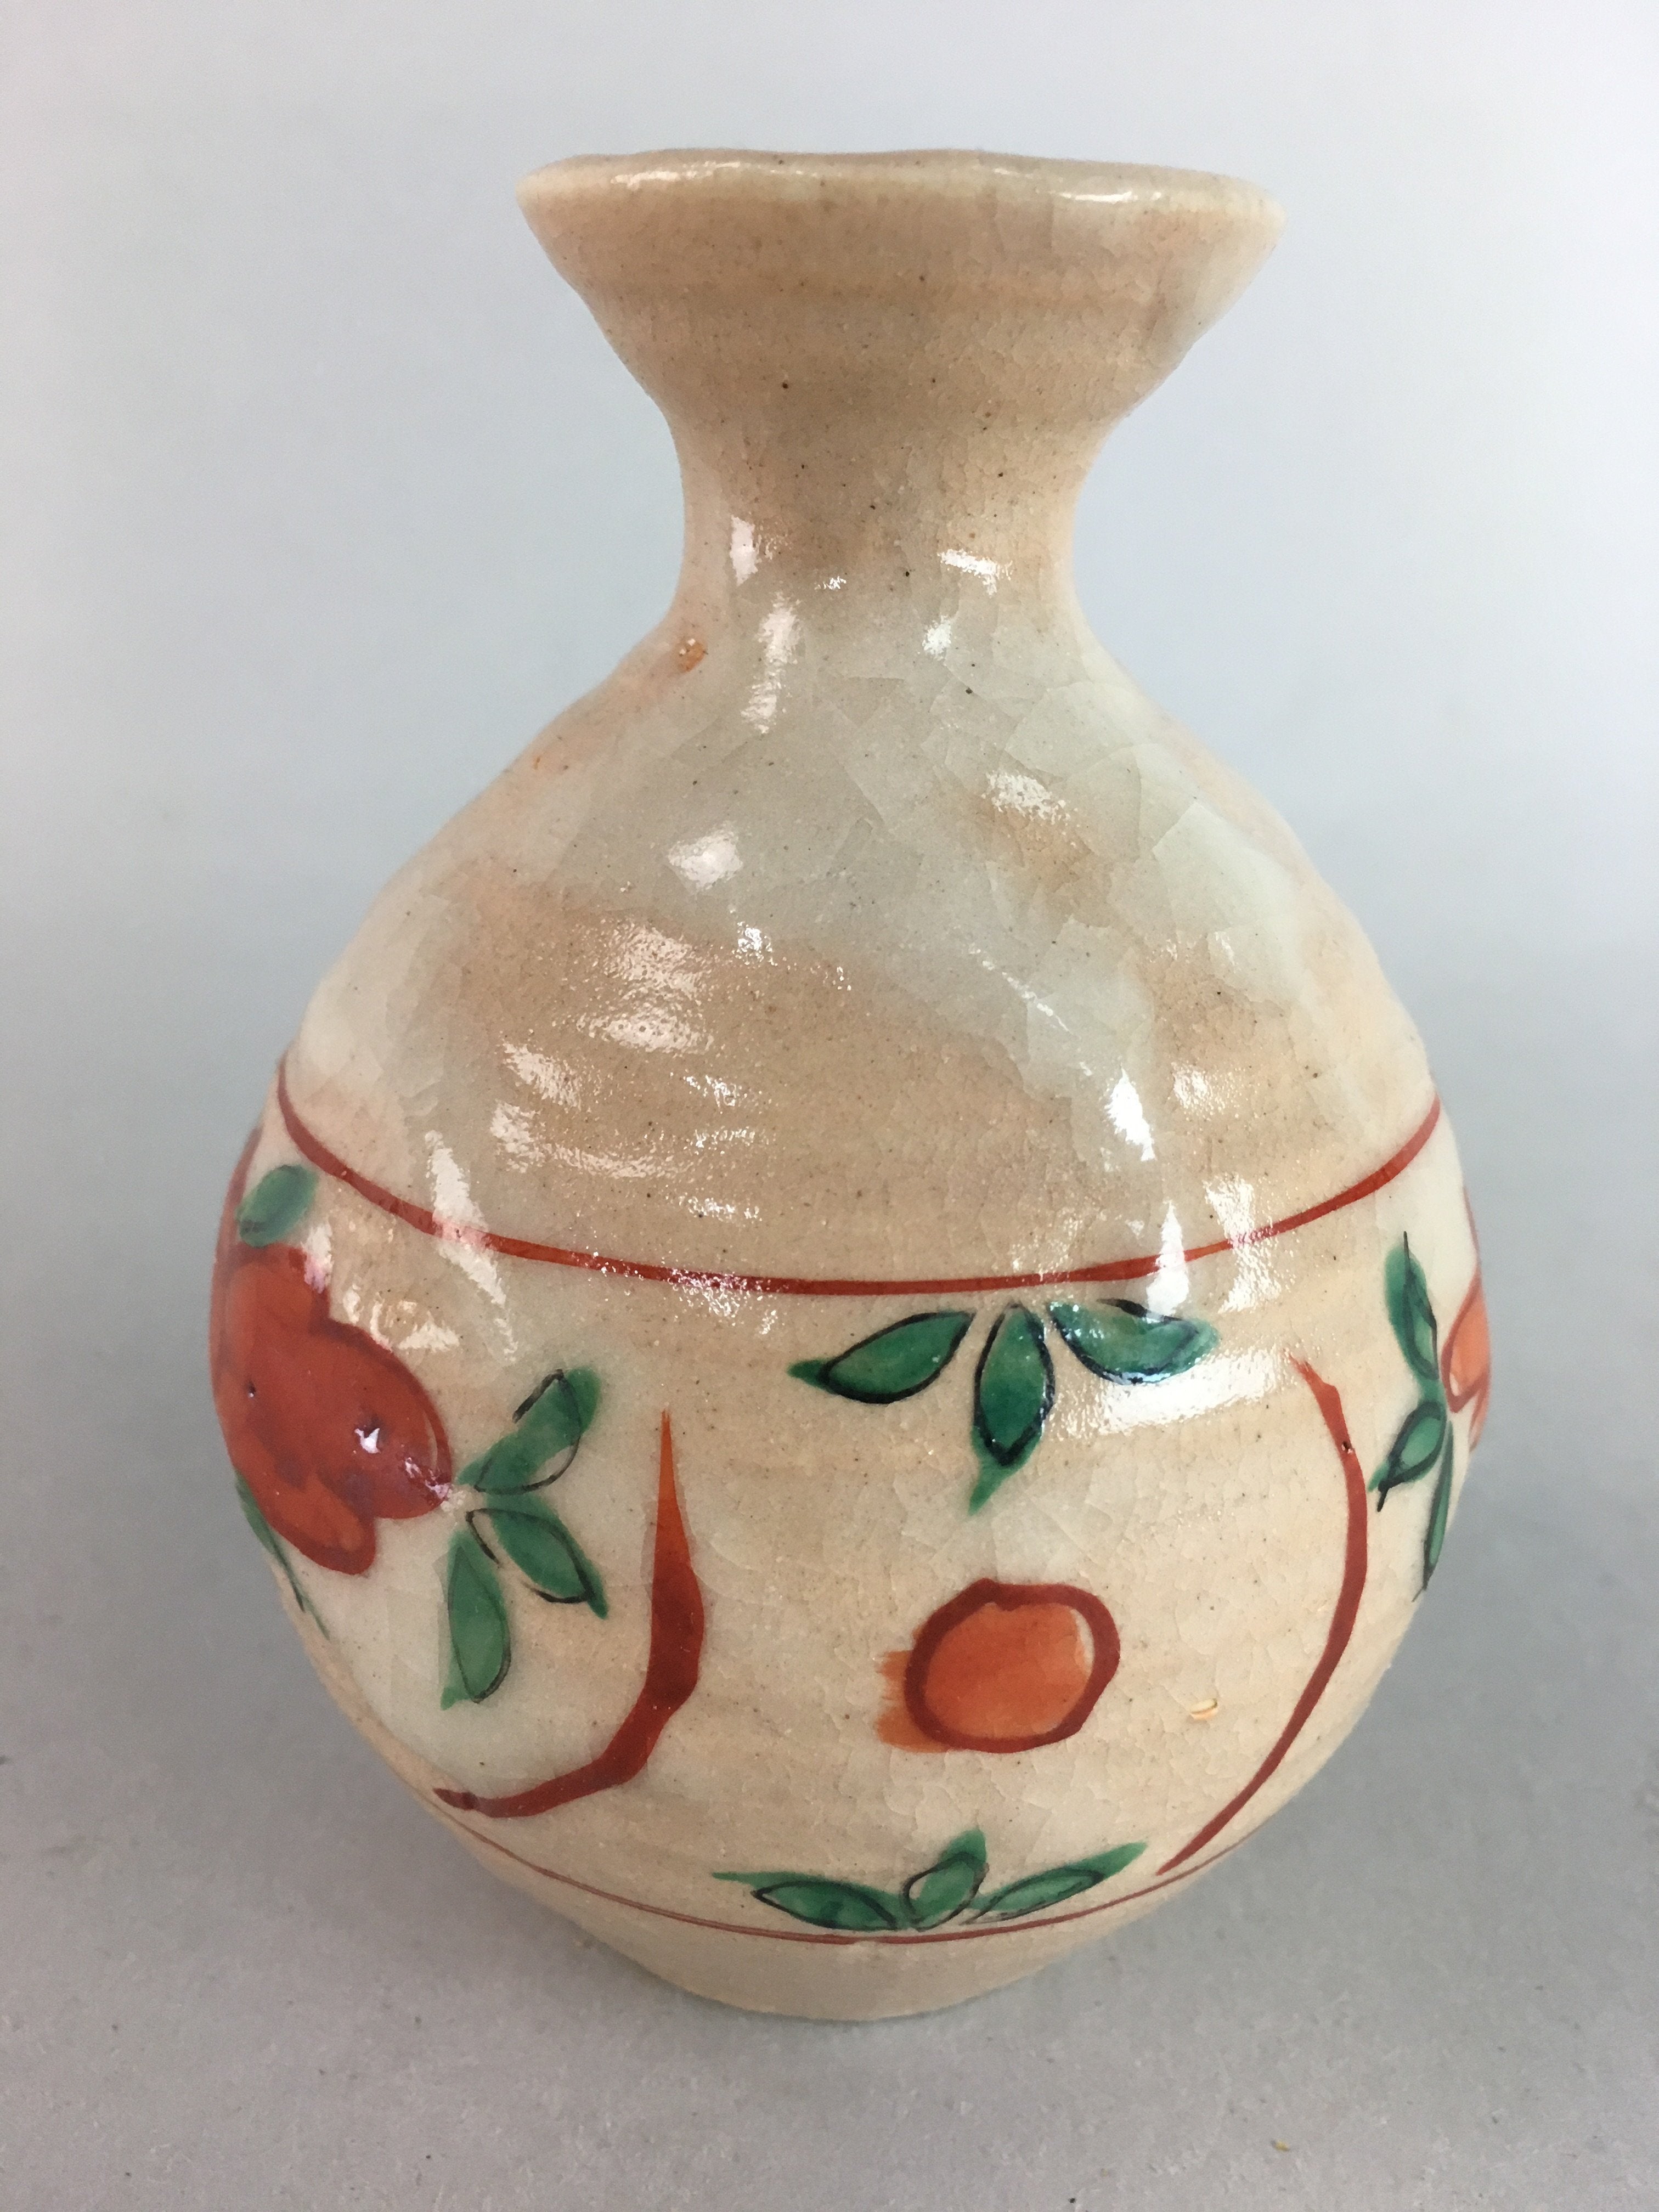 Japanese Ceramic Sake Bottle Vtg Floral Tokkuri Red Green Crackle Glaze TS164